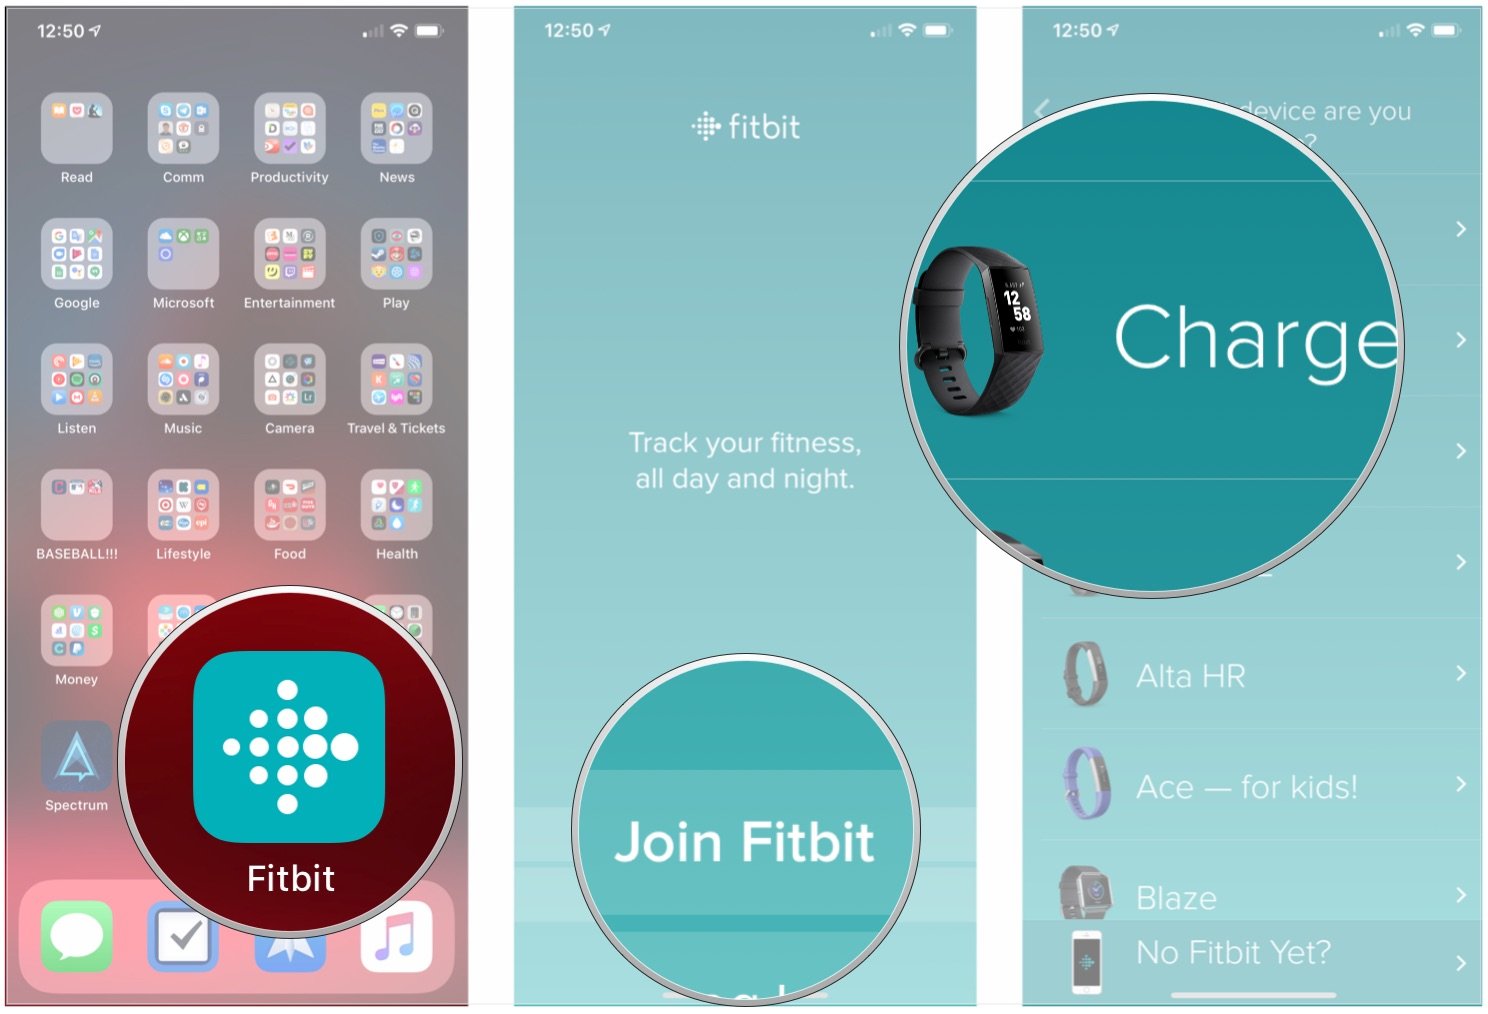 Join Fitbit app screen